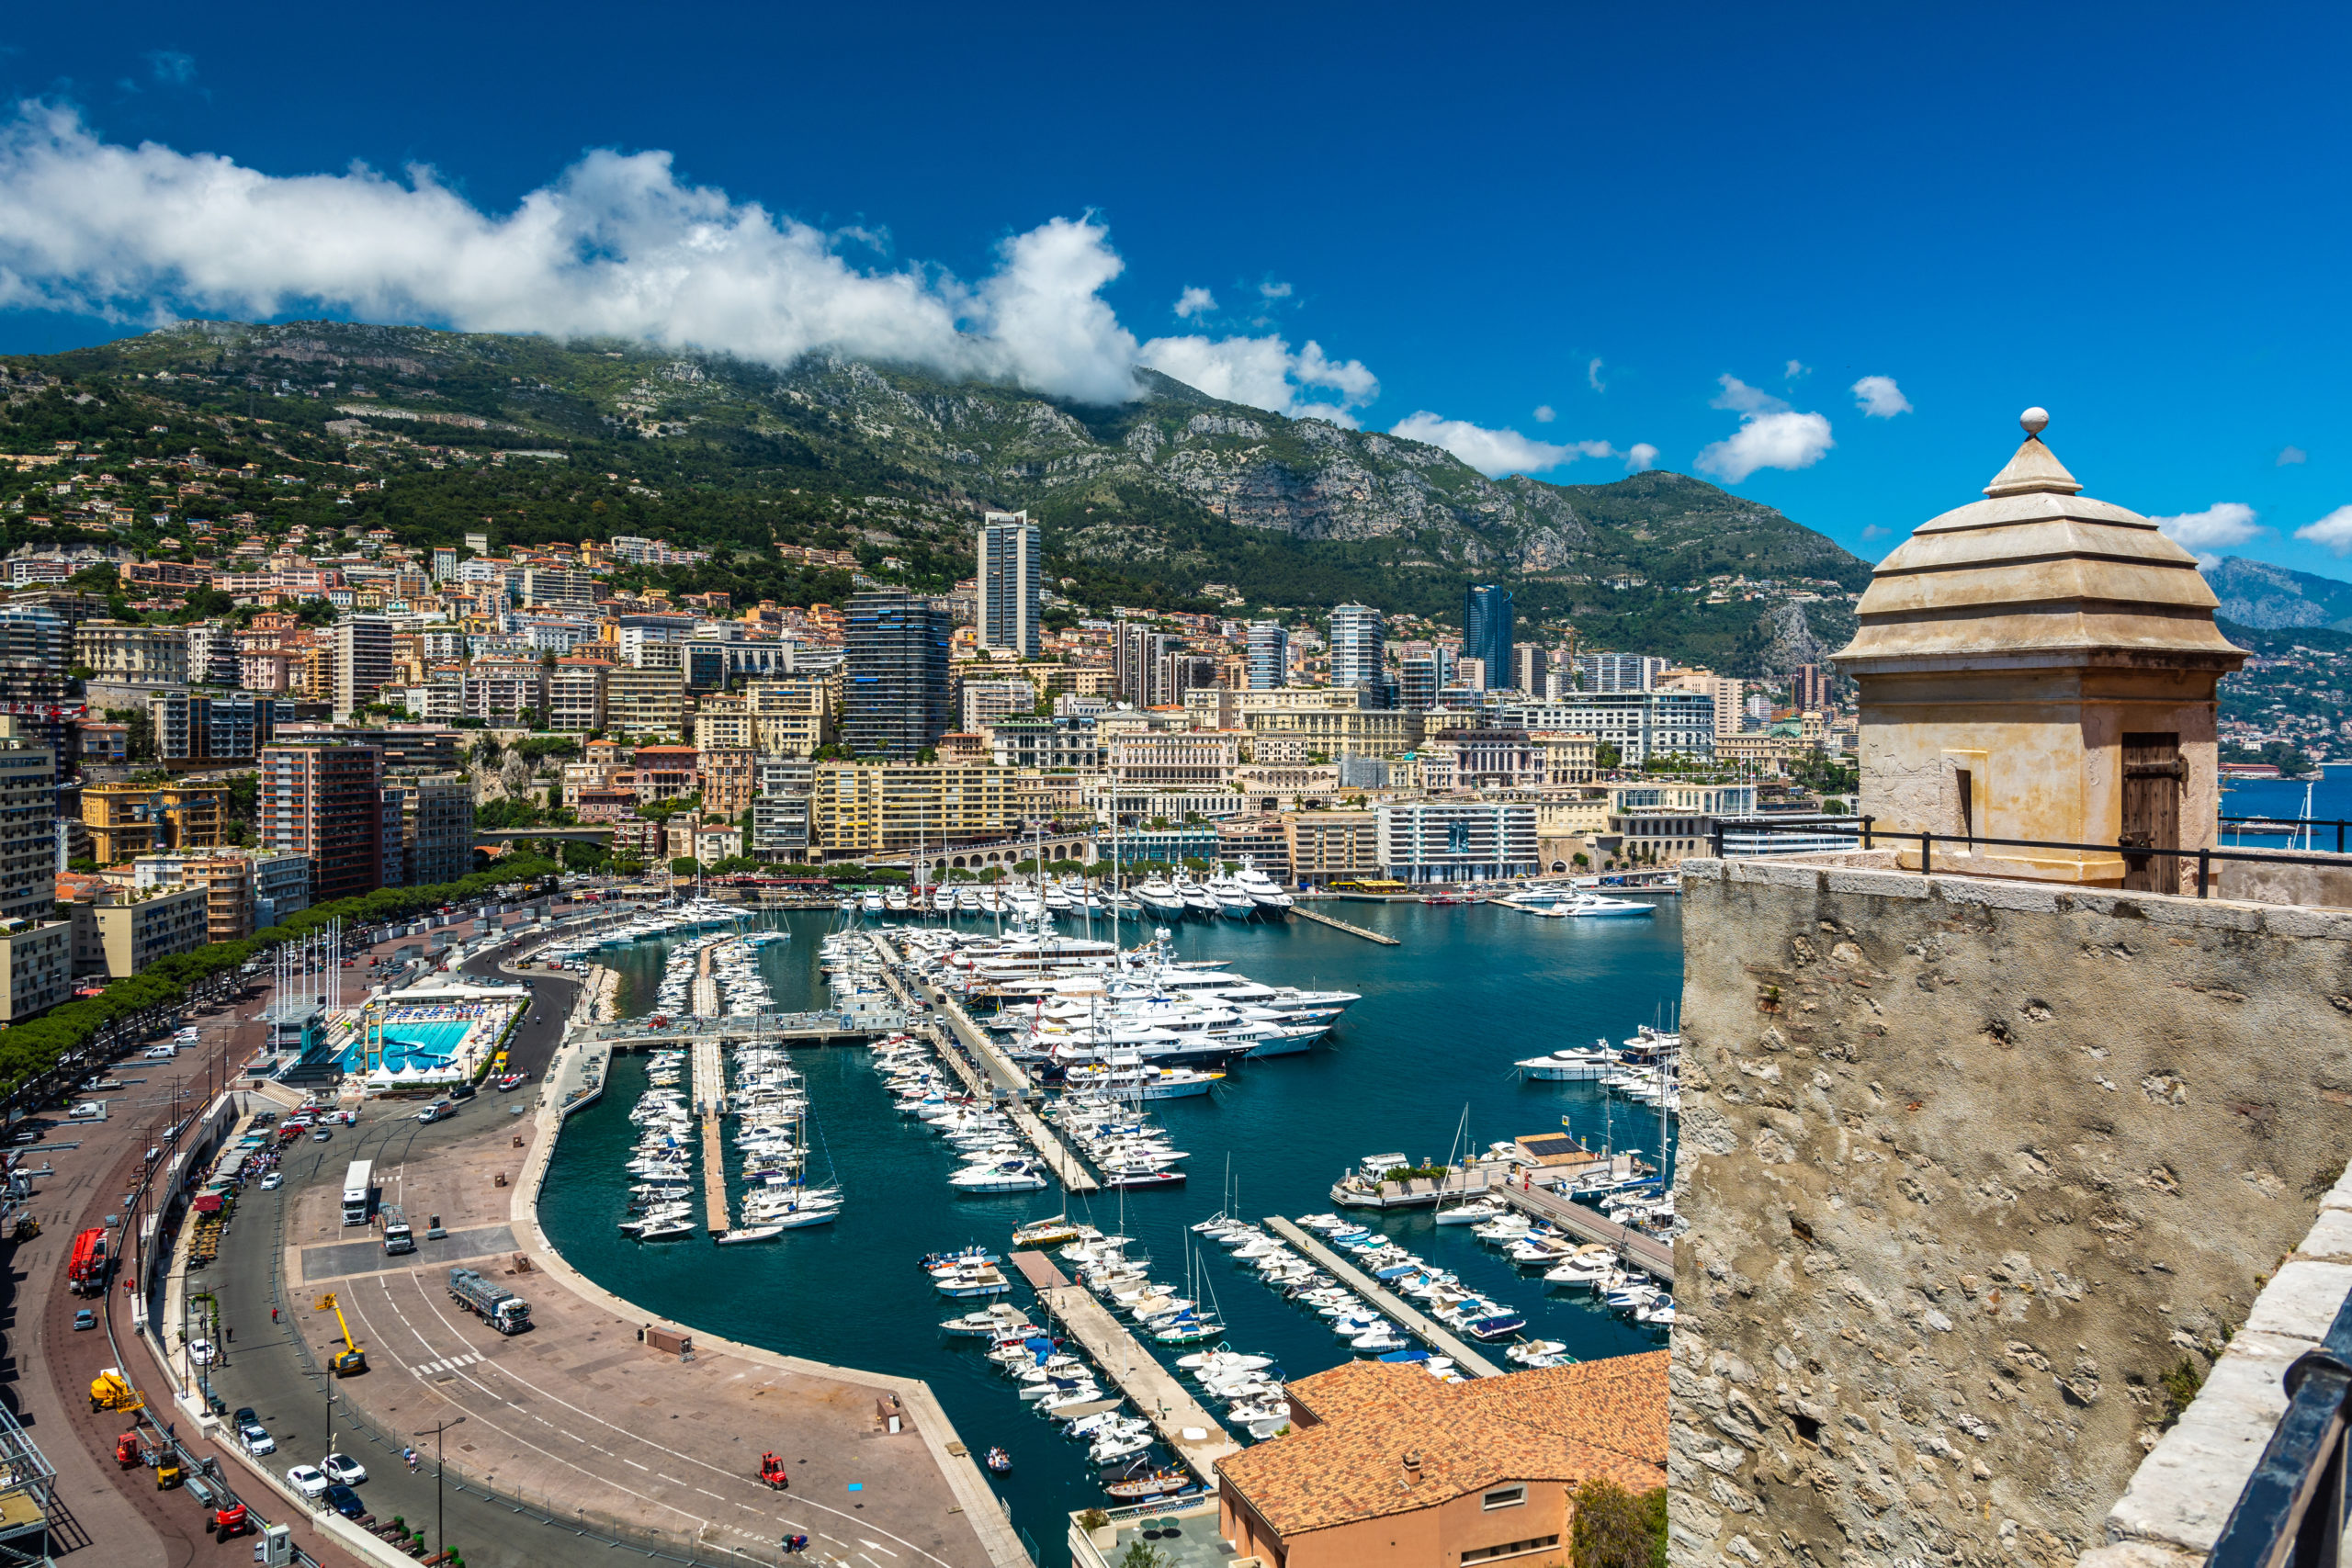 Une enquête révèle que 60 % des sociétés immobilières de la Côte d’Azur ignorent les sanctions russes